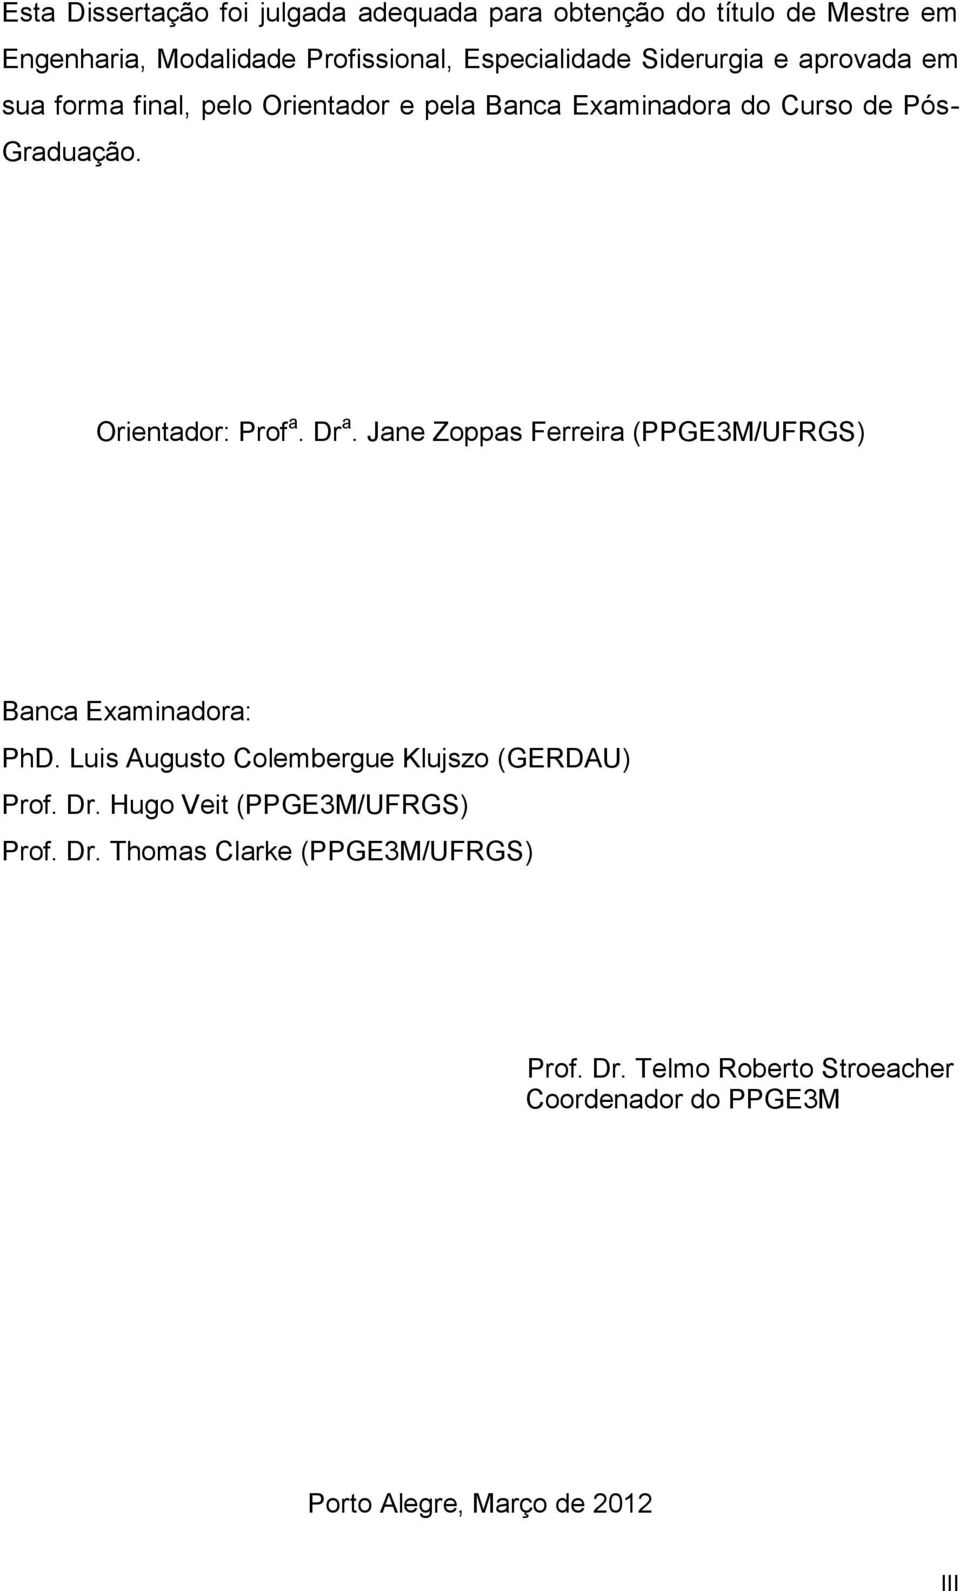 Dr a. Jane Zoppas Ferreira (PPGE3M/UFRGS) Banca Examinadora: PhD. Luis Augusto Colembergue Klujszo (GERDAU) Prof. Dr.